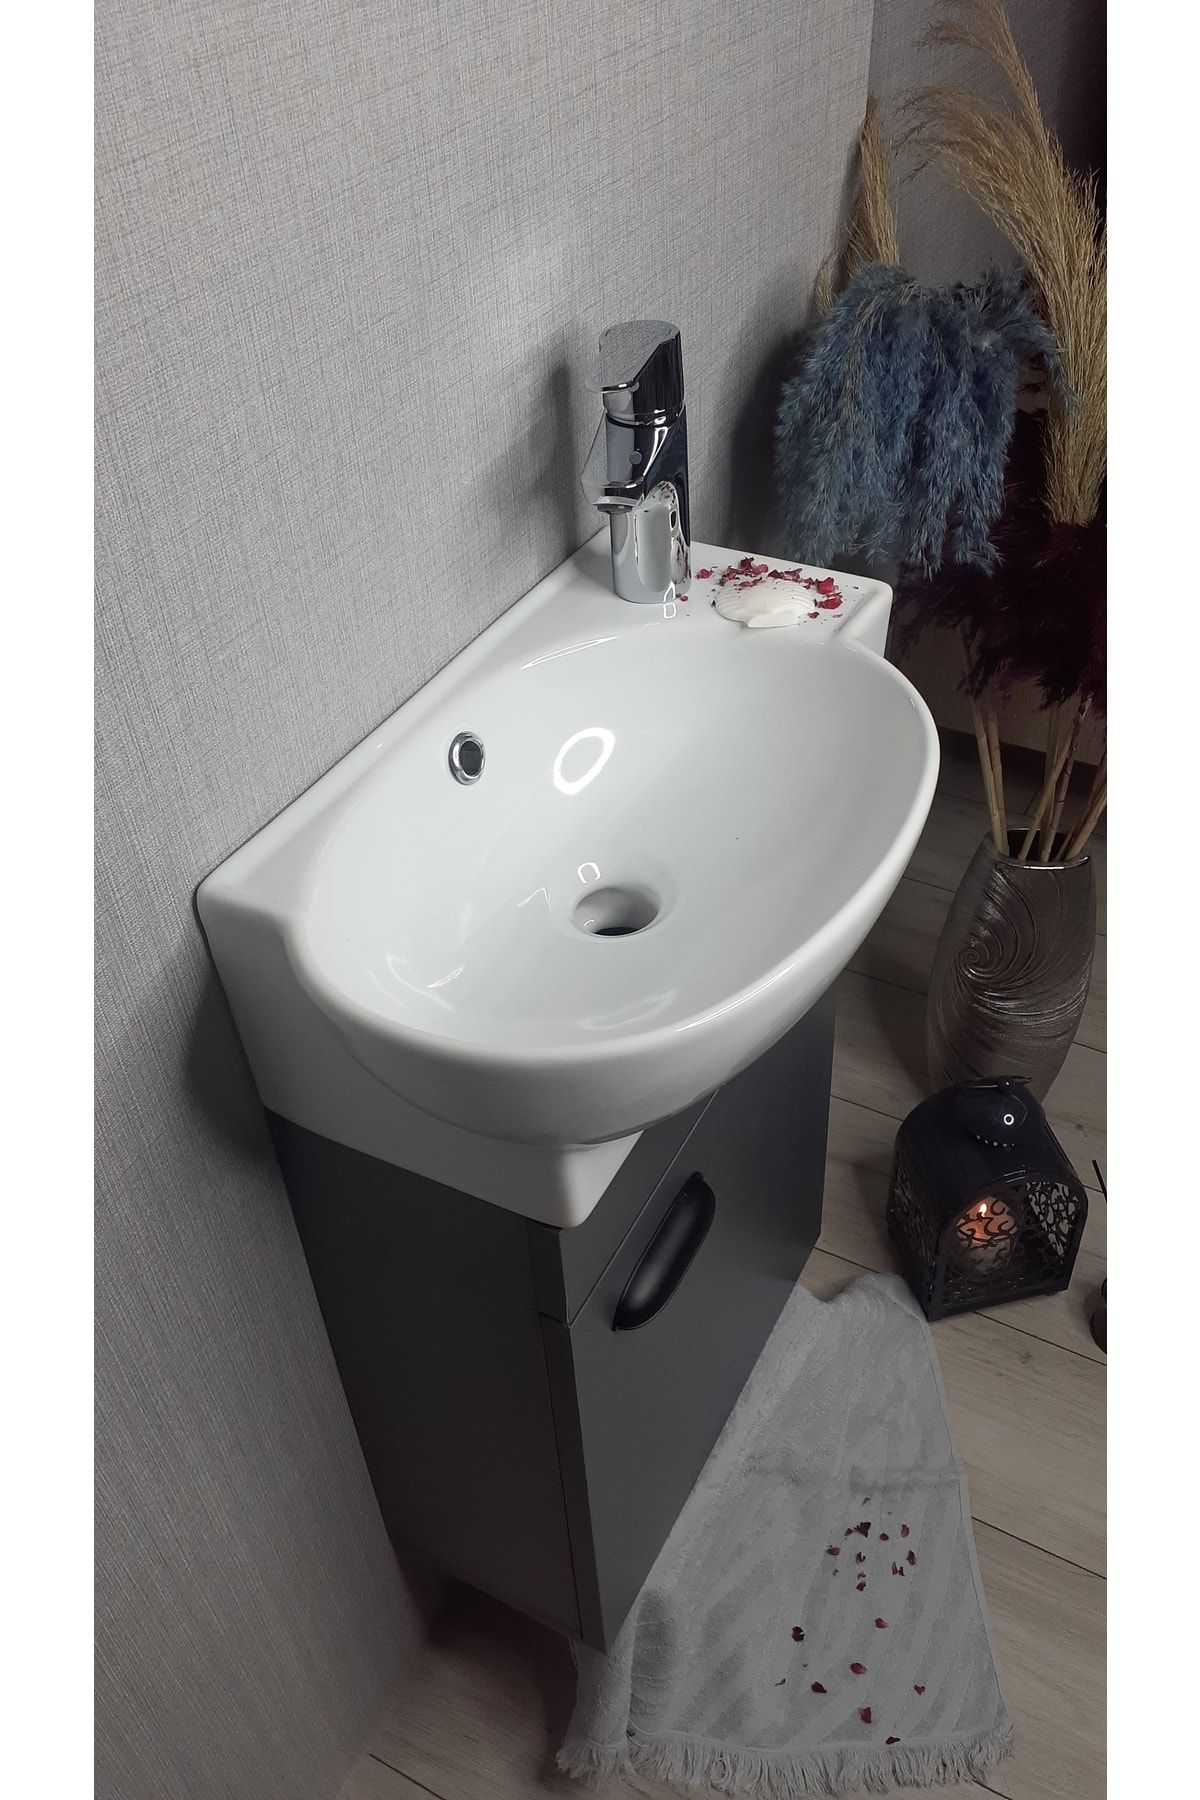 TURKUAZSERAMİK Turkuaz Banyo Ve Tuvalet Mini Köşe Lavabo 28*45 Cm (banyo Dolabı Dahil)